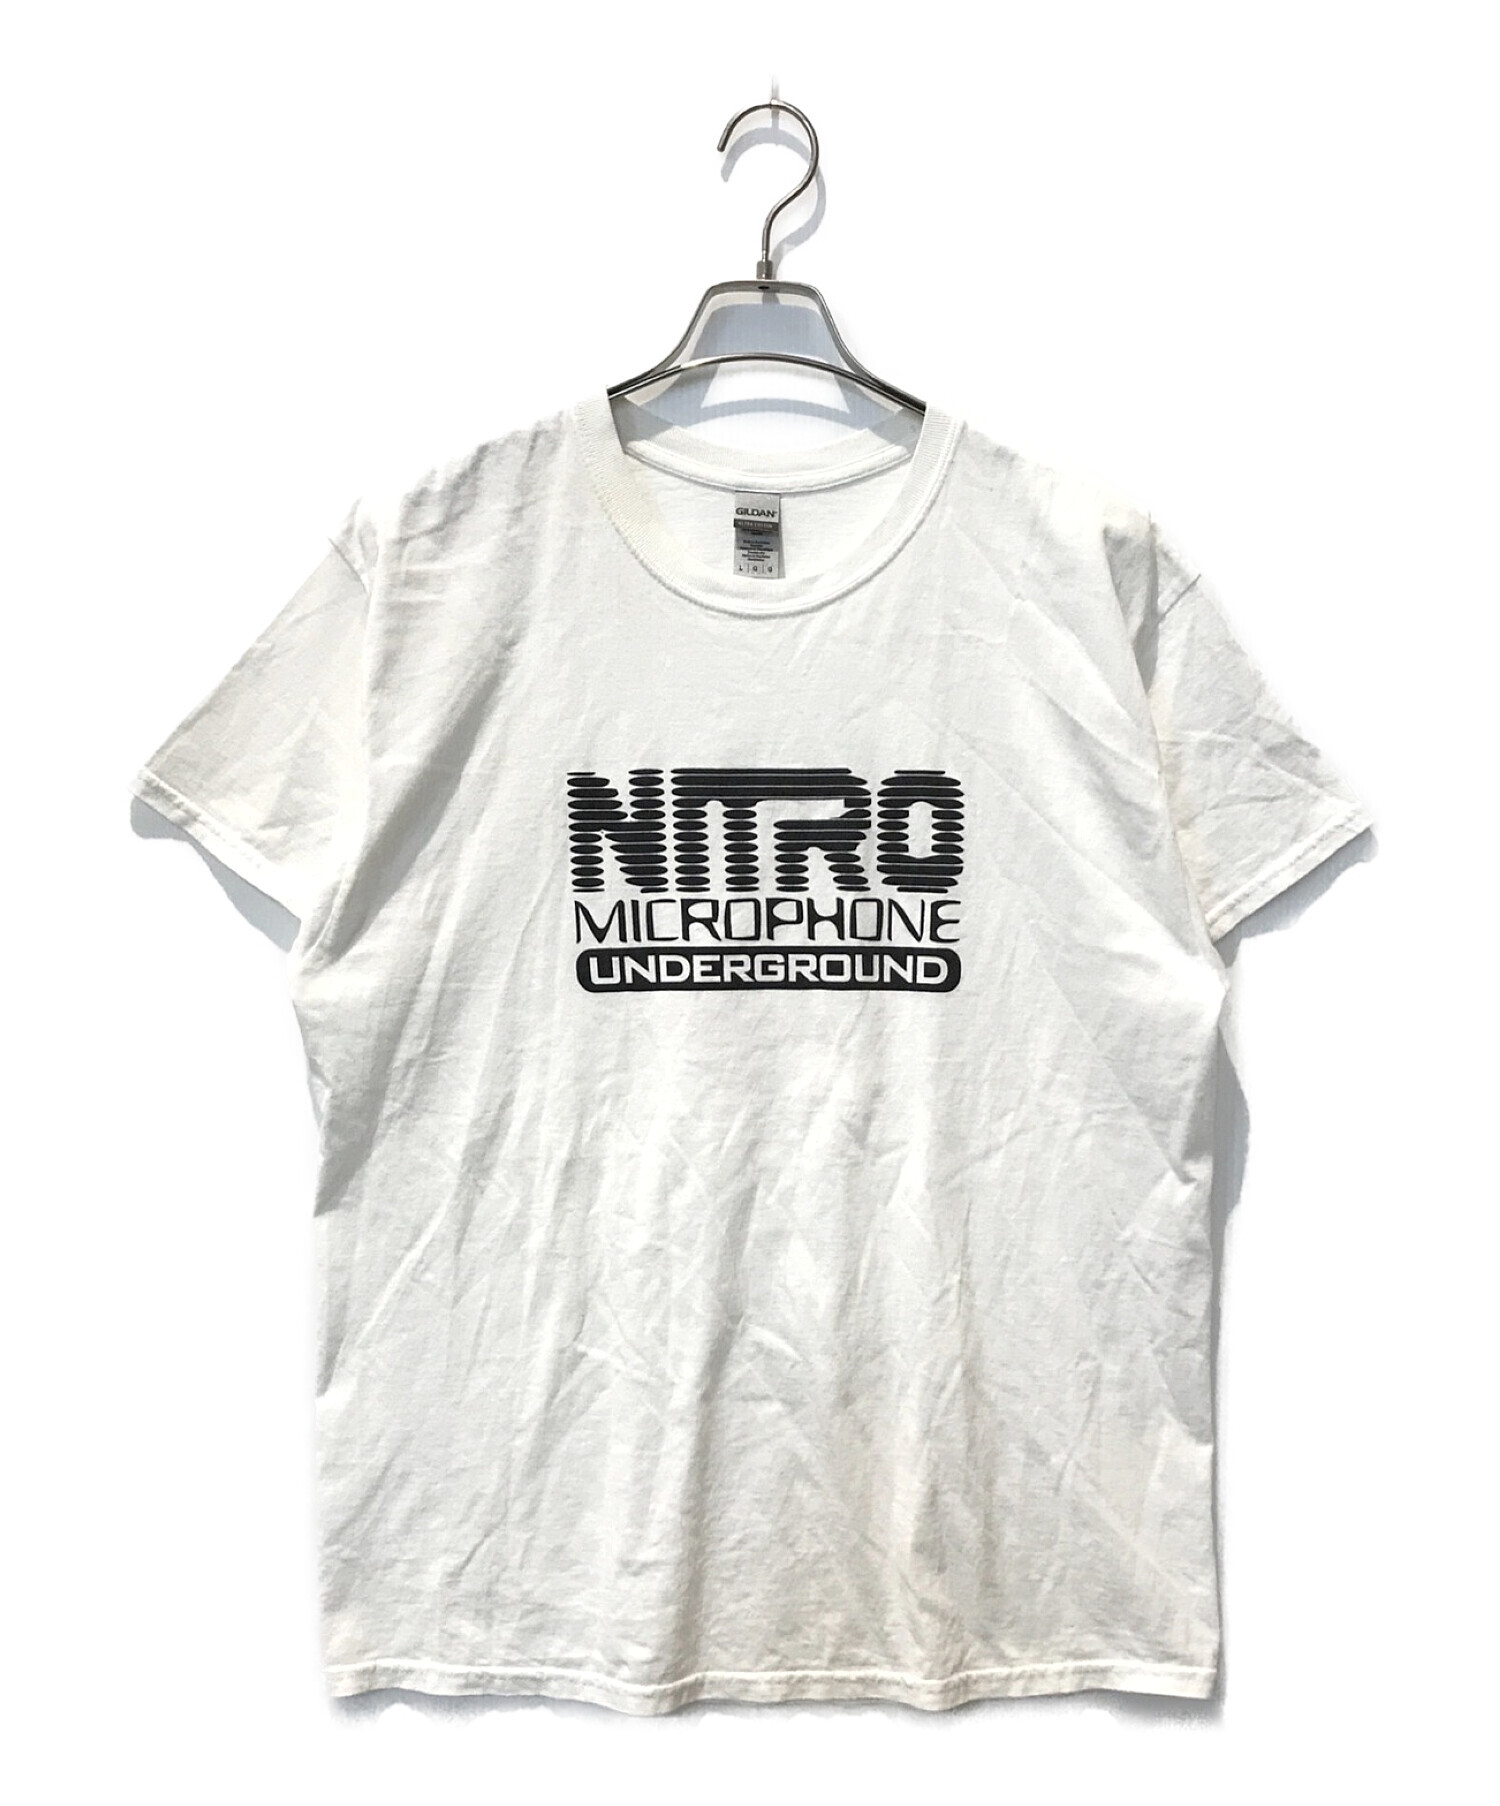 ニトロ・マイクロフォン・アンダーグラウンド 半袖Tシャツ